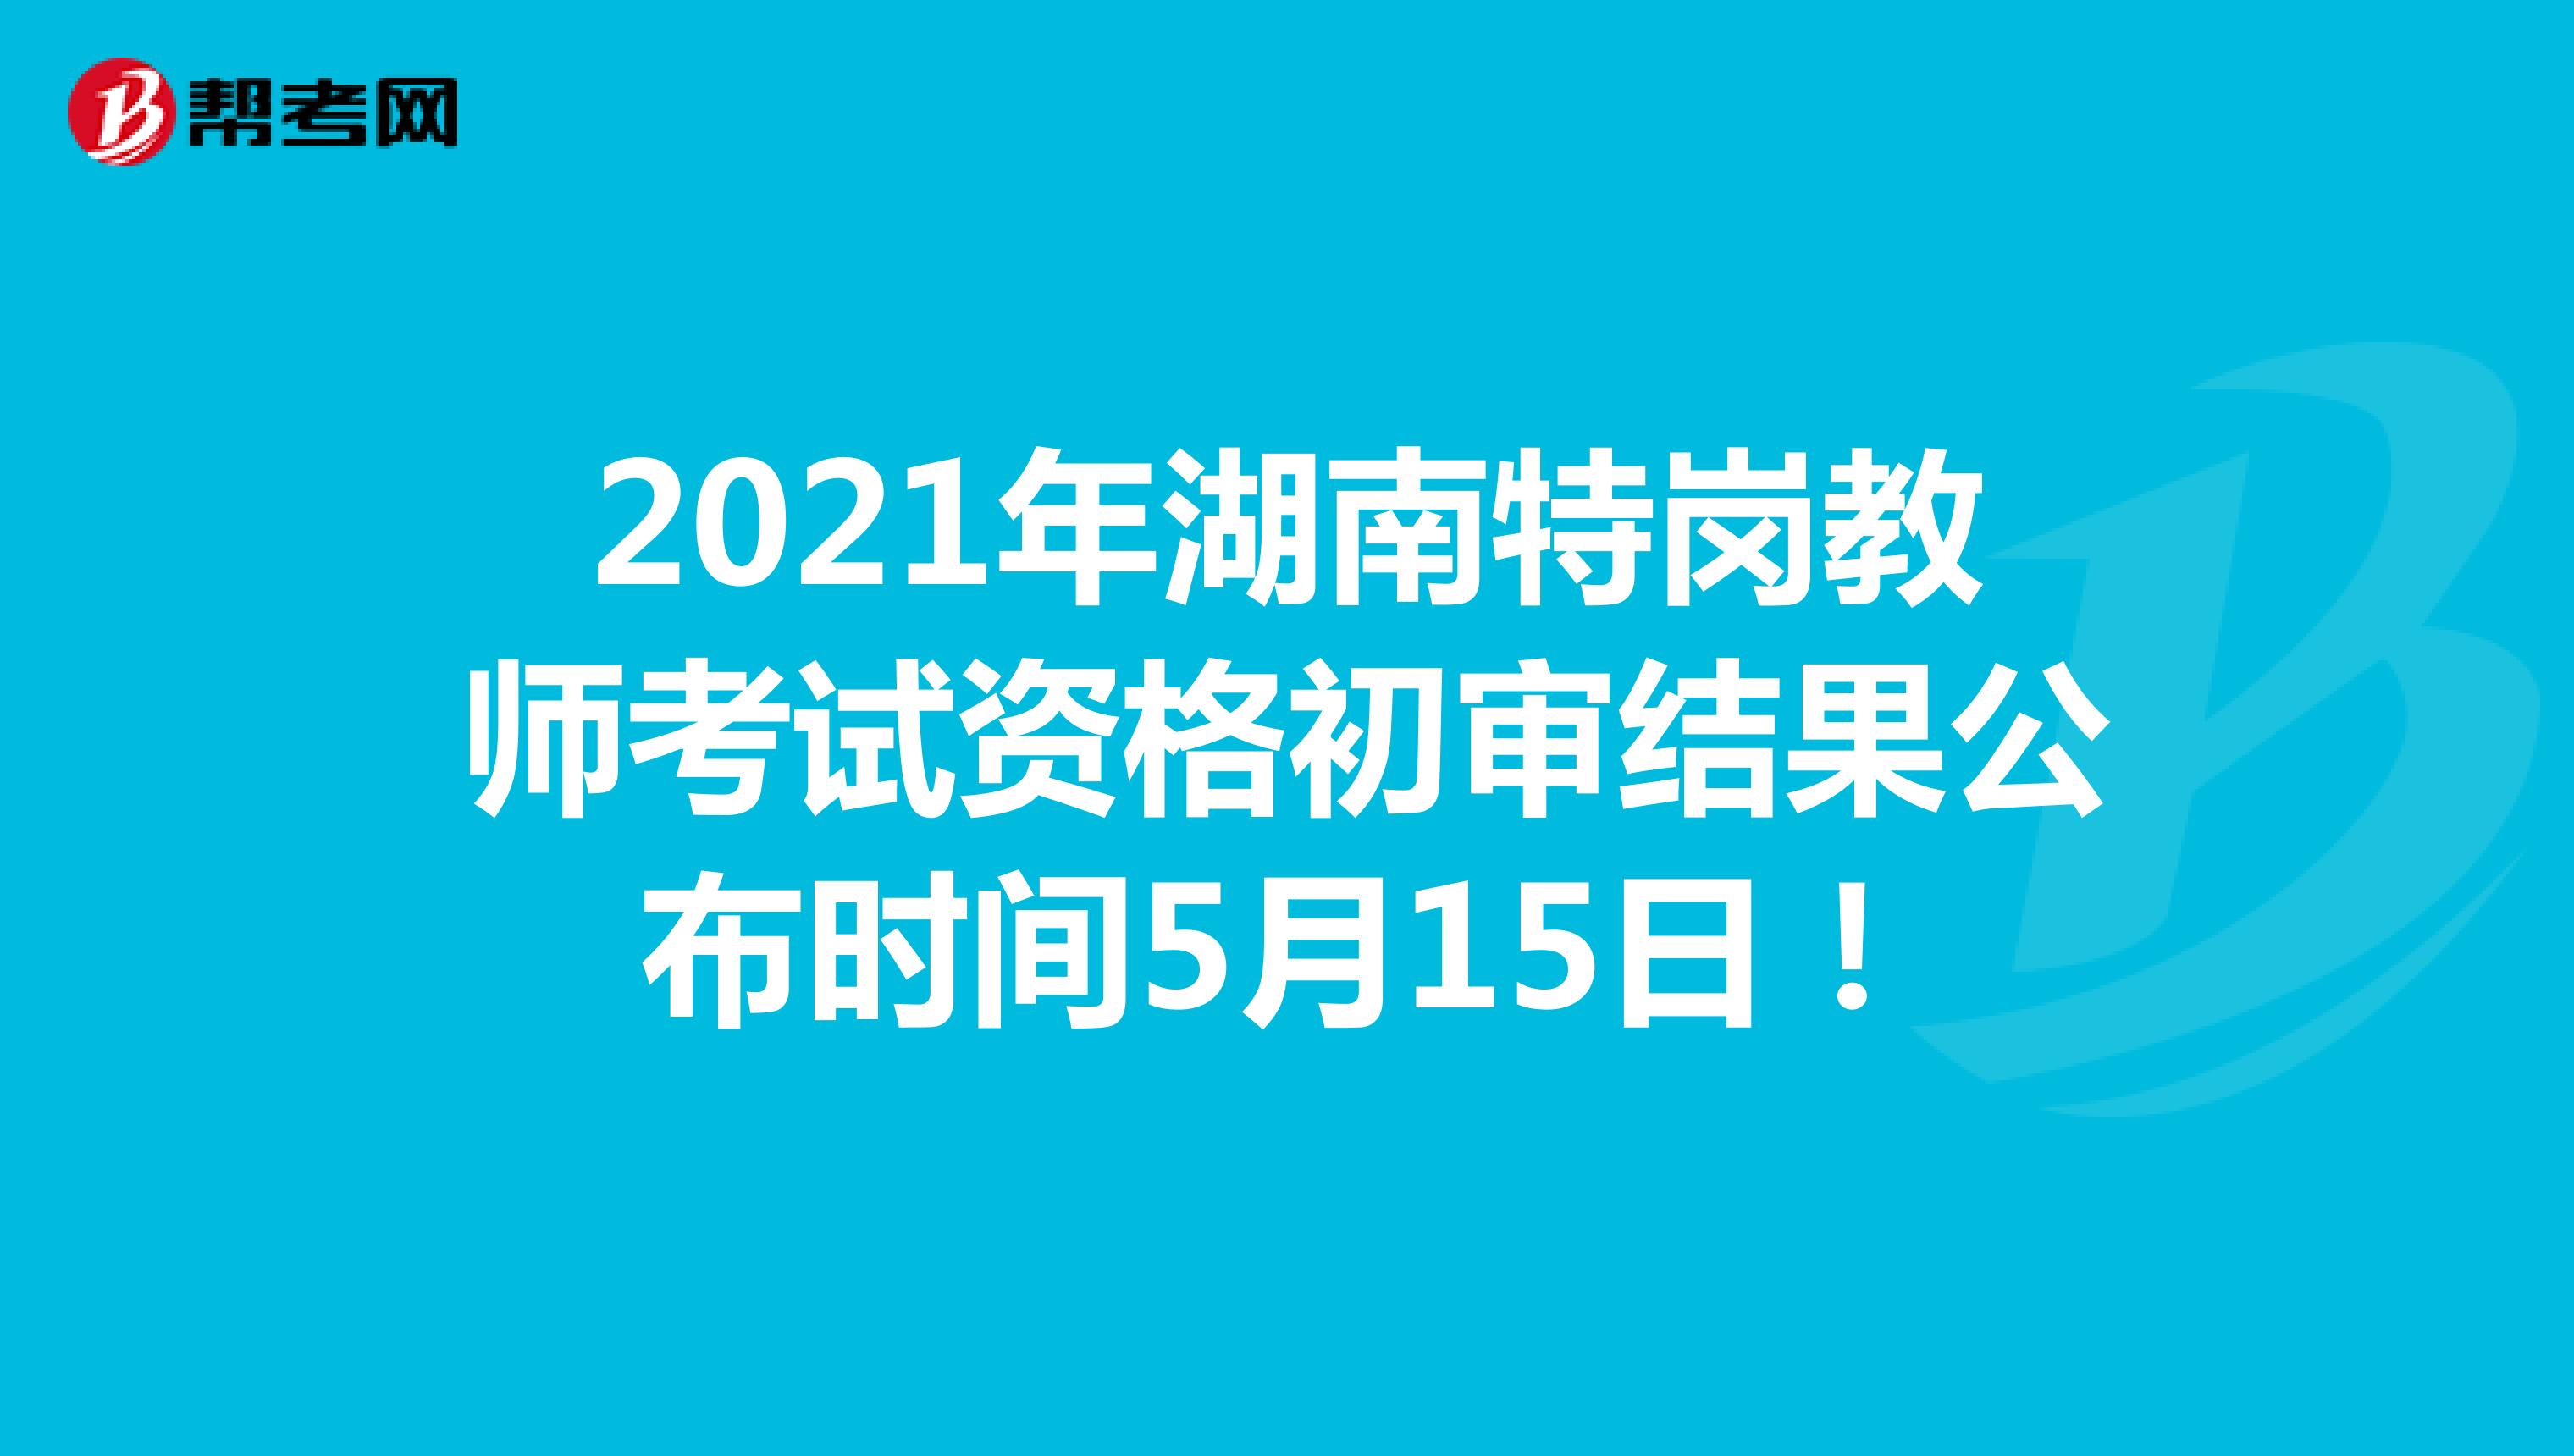 2021年湖南特岗教师考试资格初审结果公布时间5月15日！